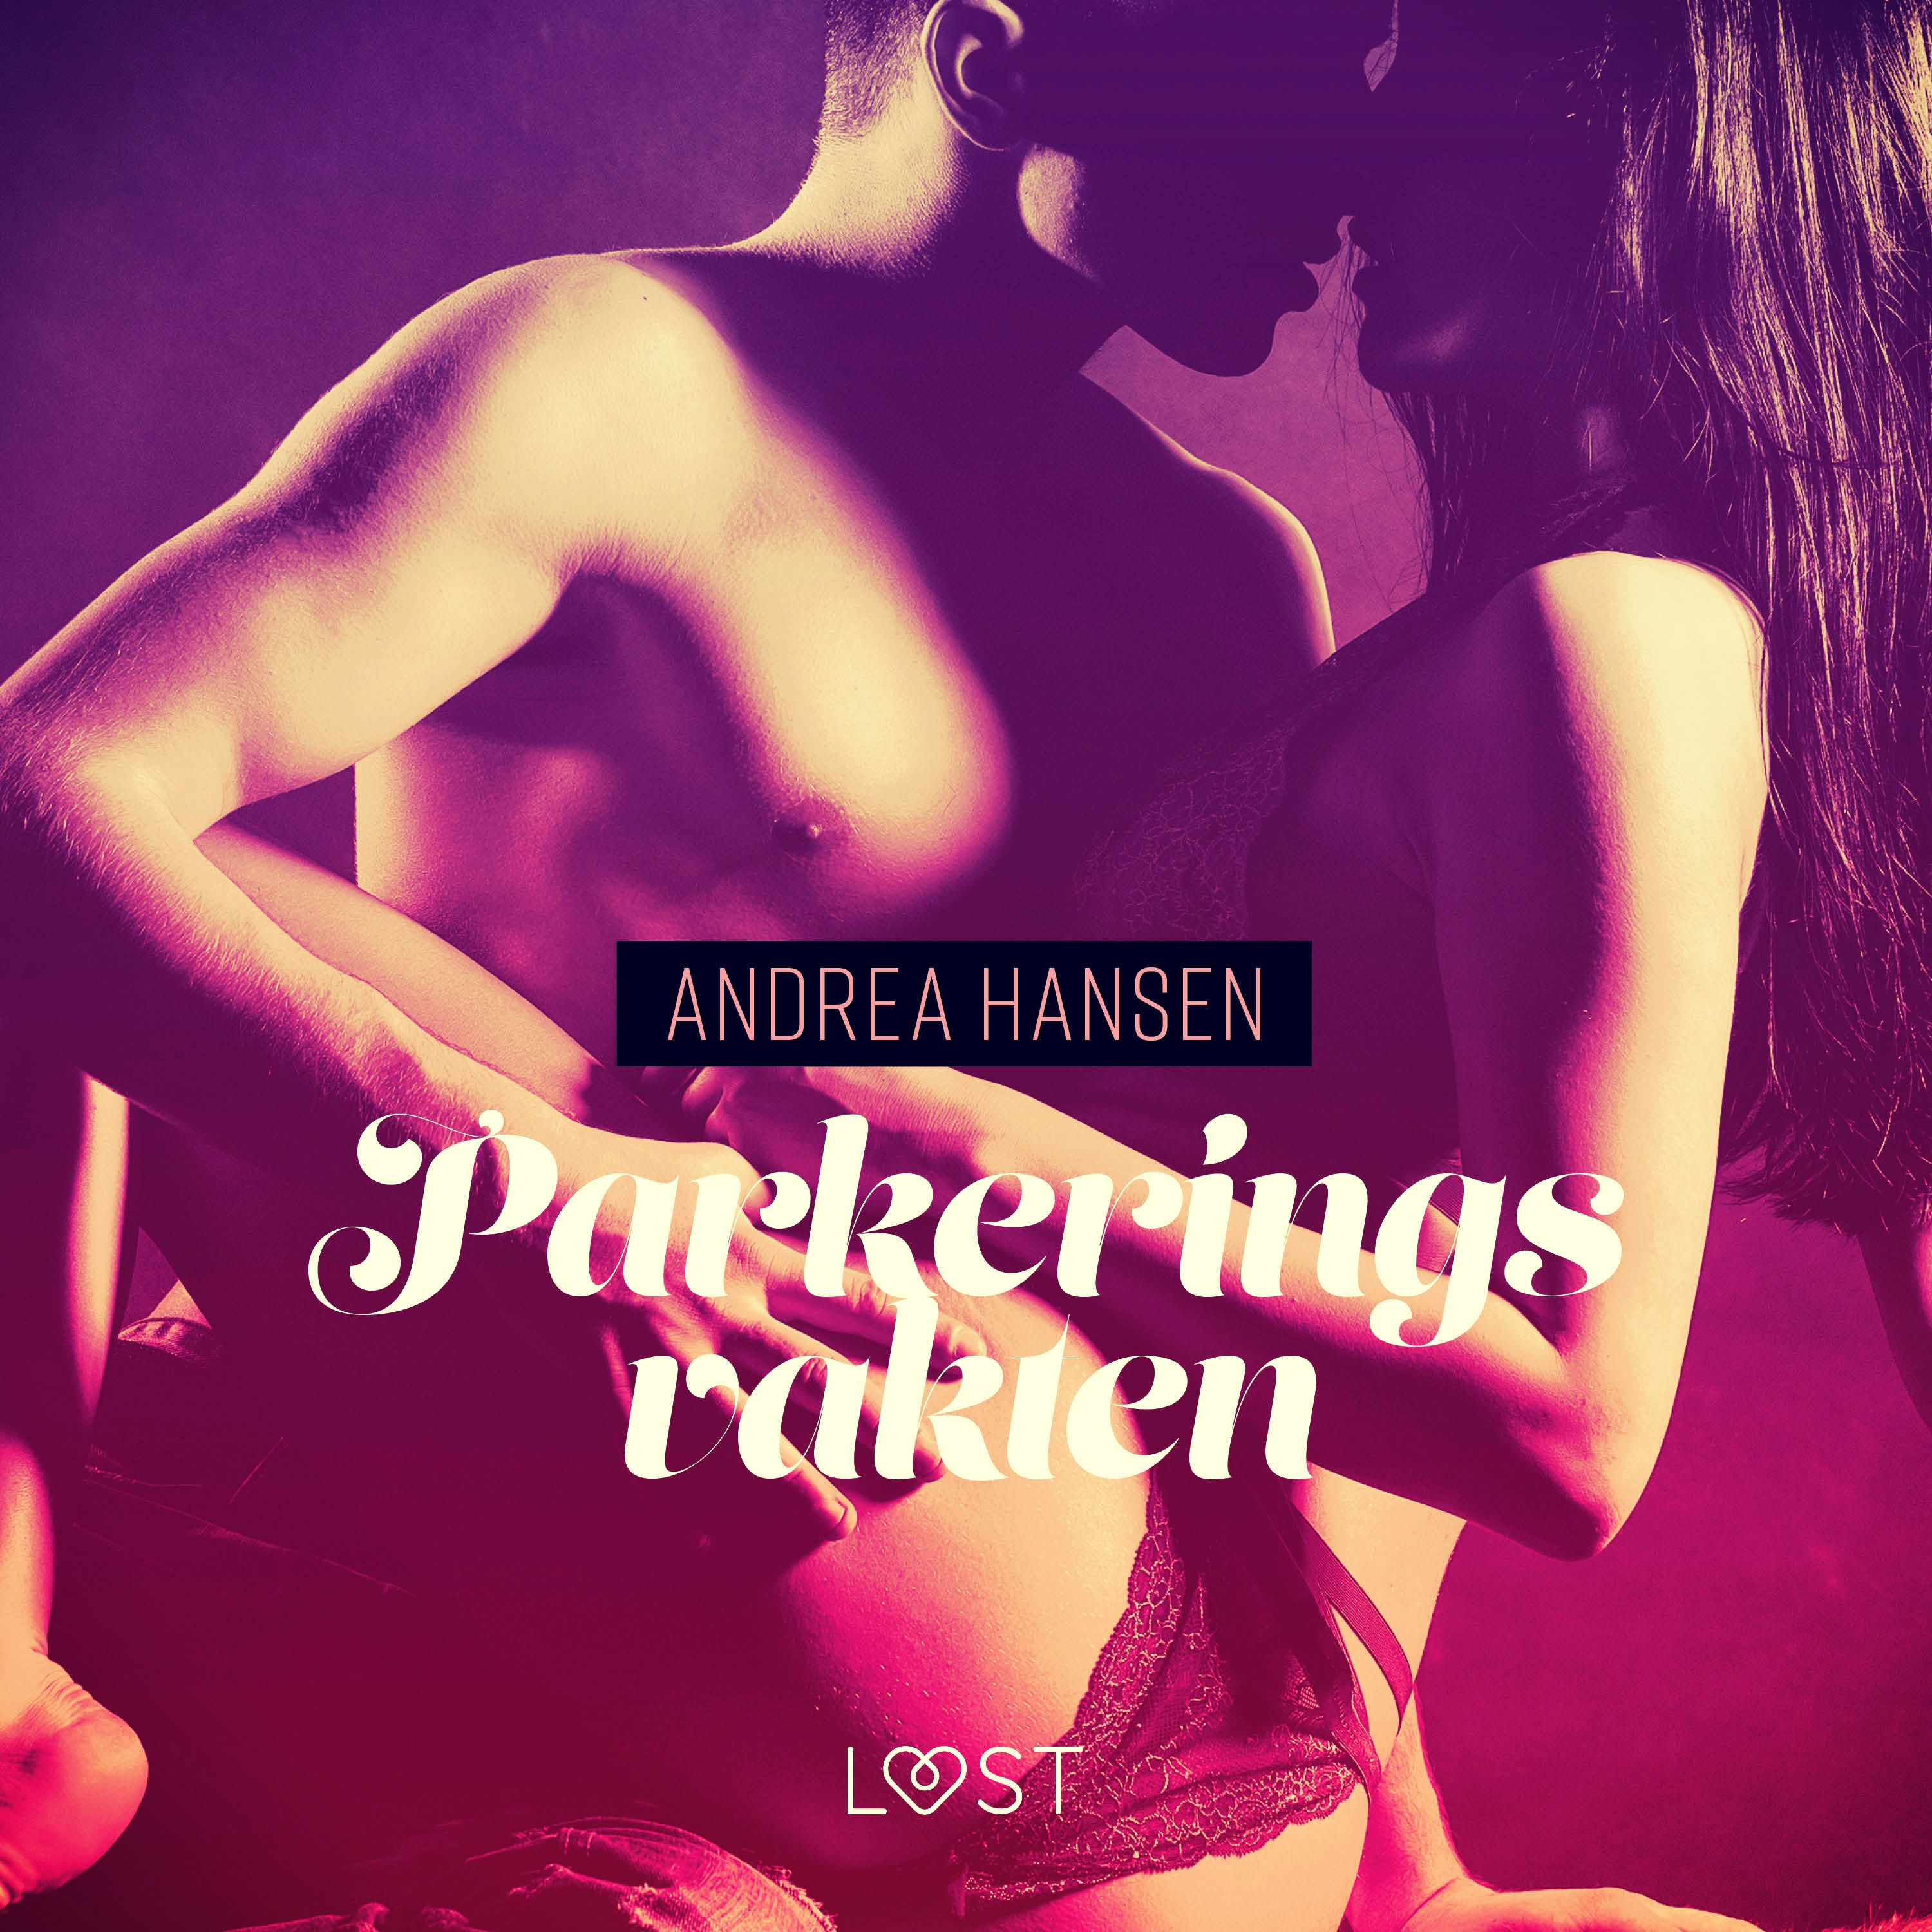 Parkeringsvakten - erotisk novell, ljudbok av Andrea Hansen